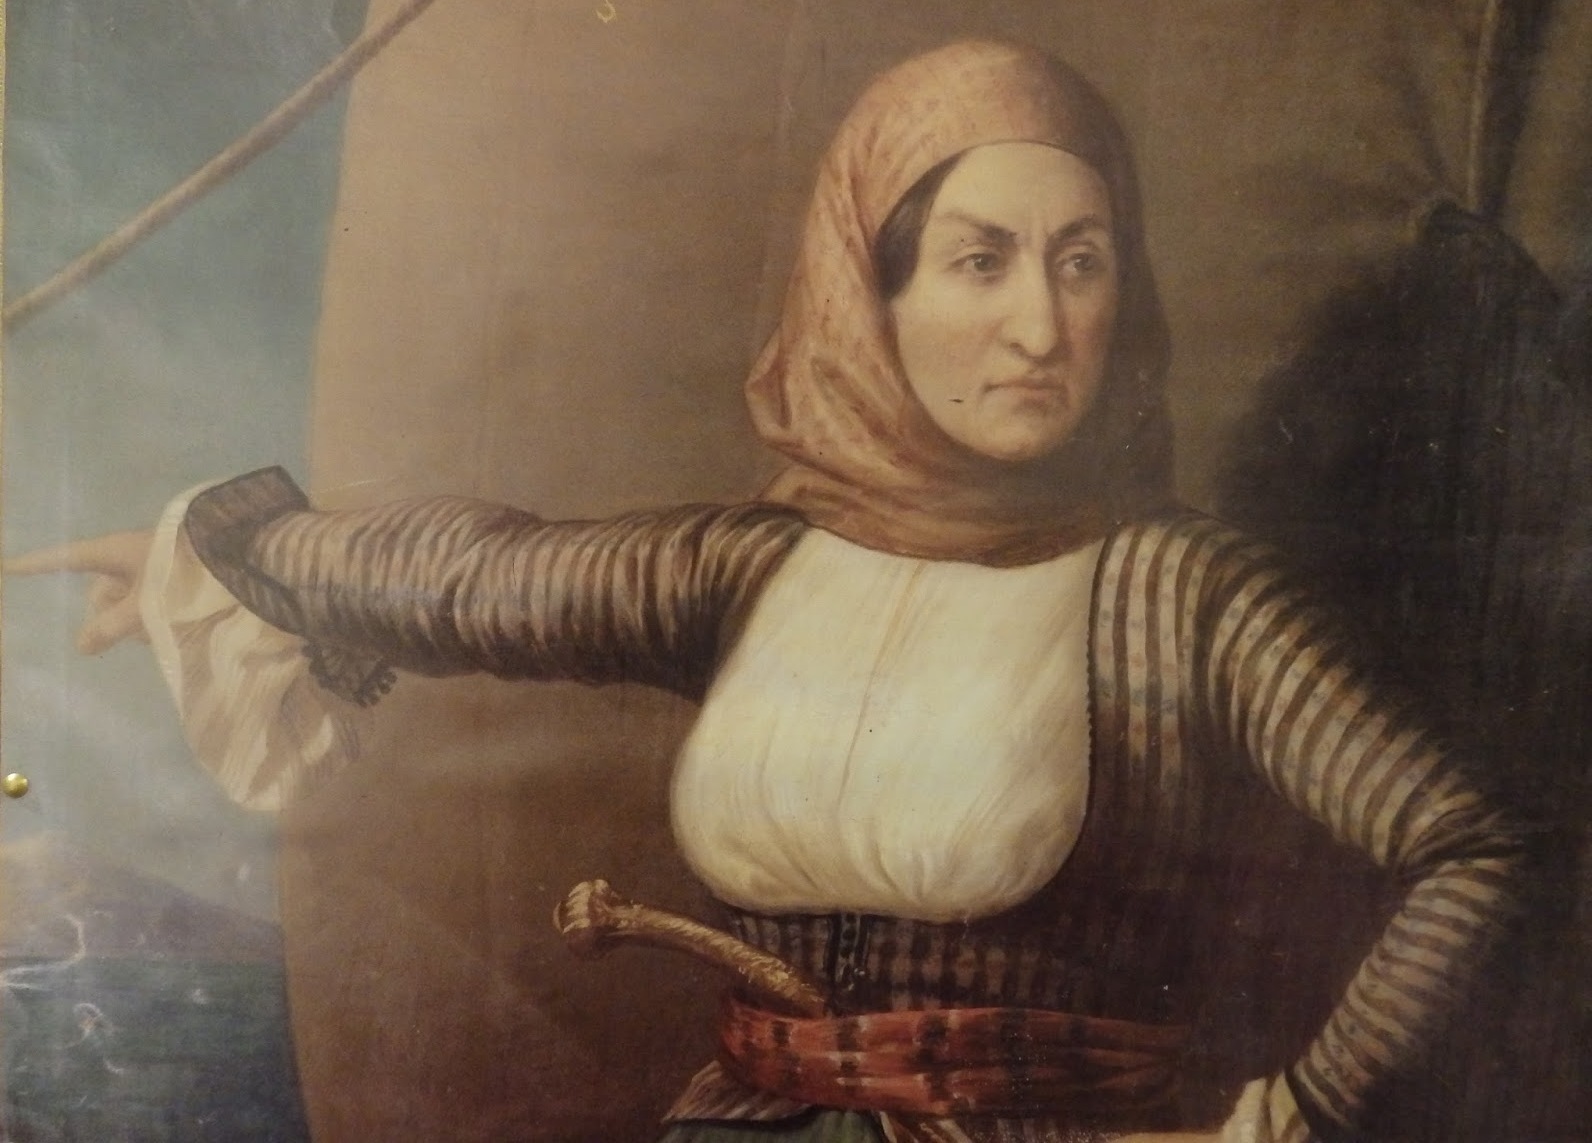 Η Λασκαρίνα Μπουμπουλίνα είναι μια από τις εννέα πιο σκληροτράχηλες γυναίκες της ιστορίας